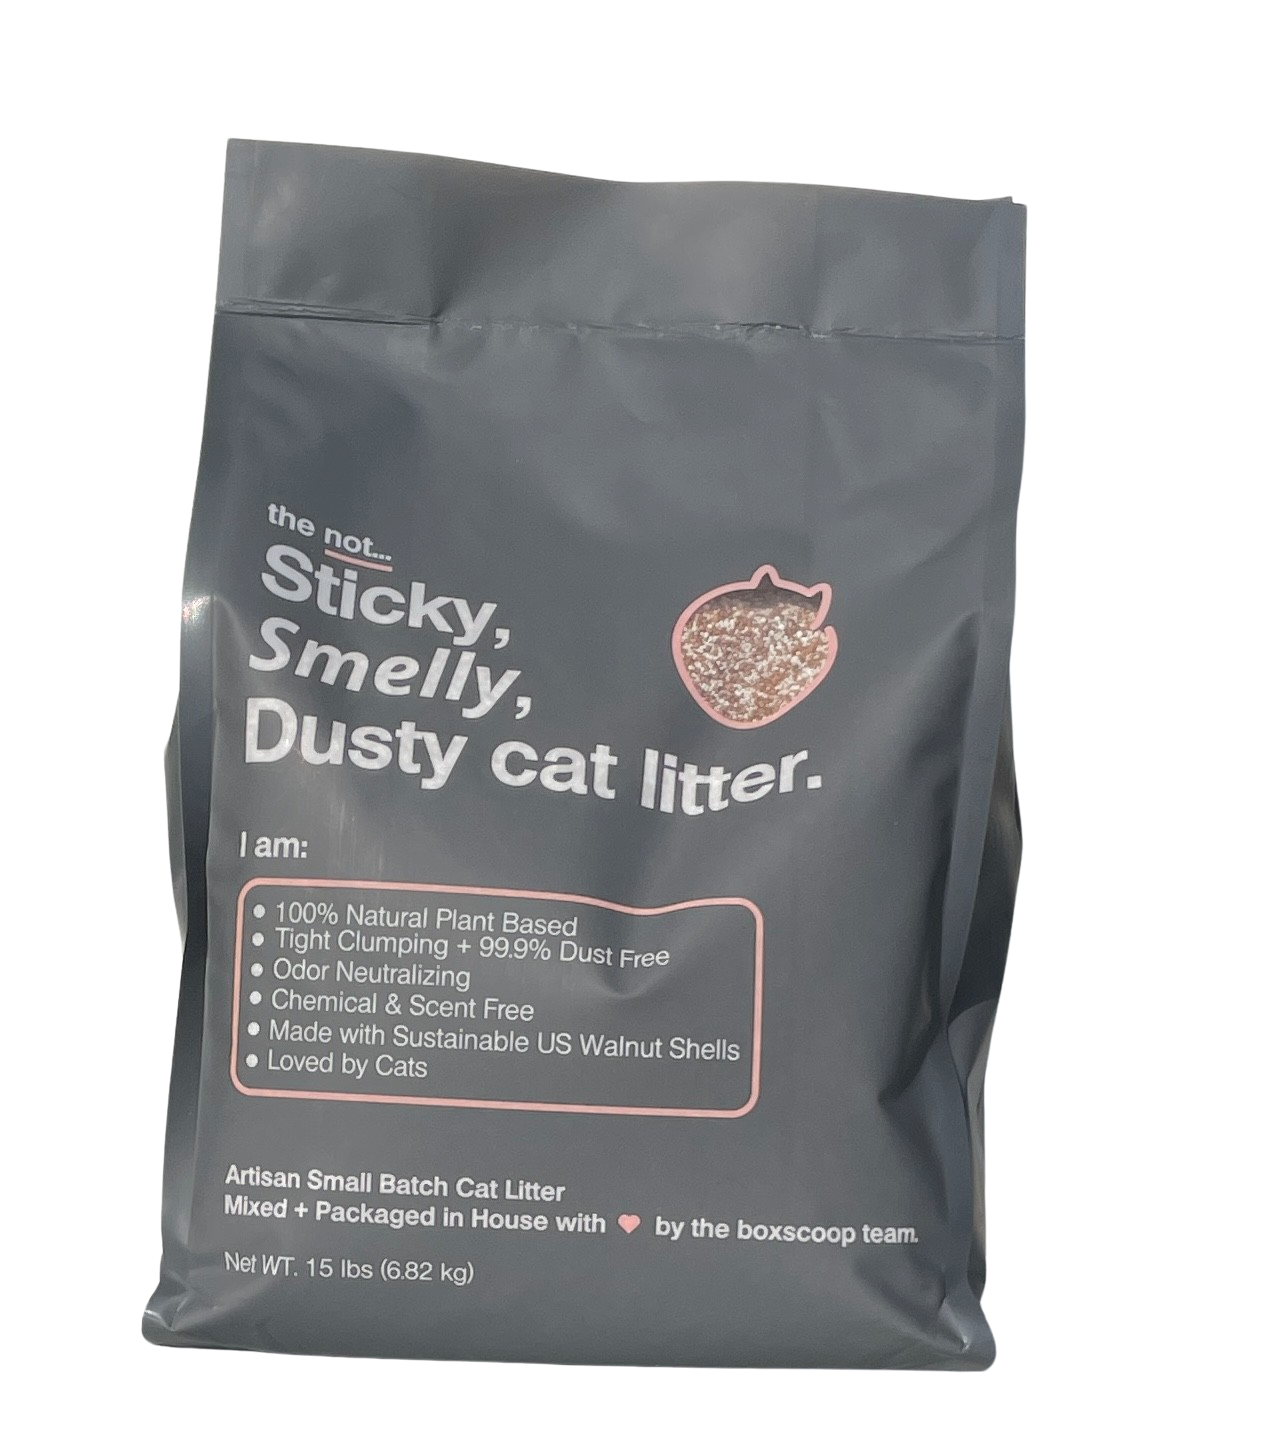 the not Sticky, Smelly, Dusty Cat Litter